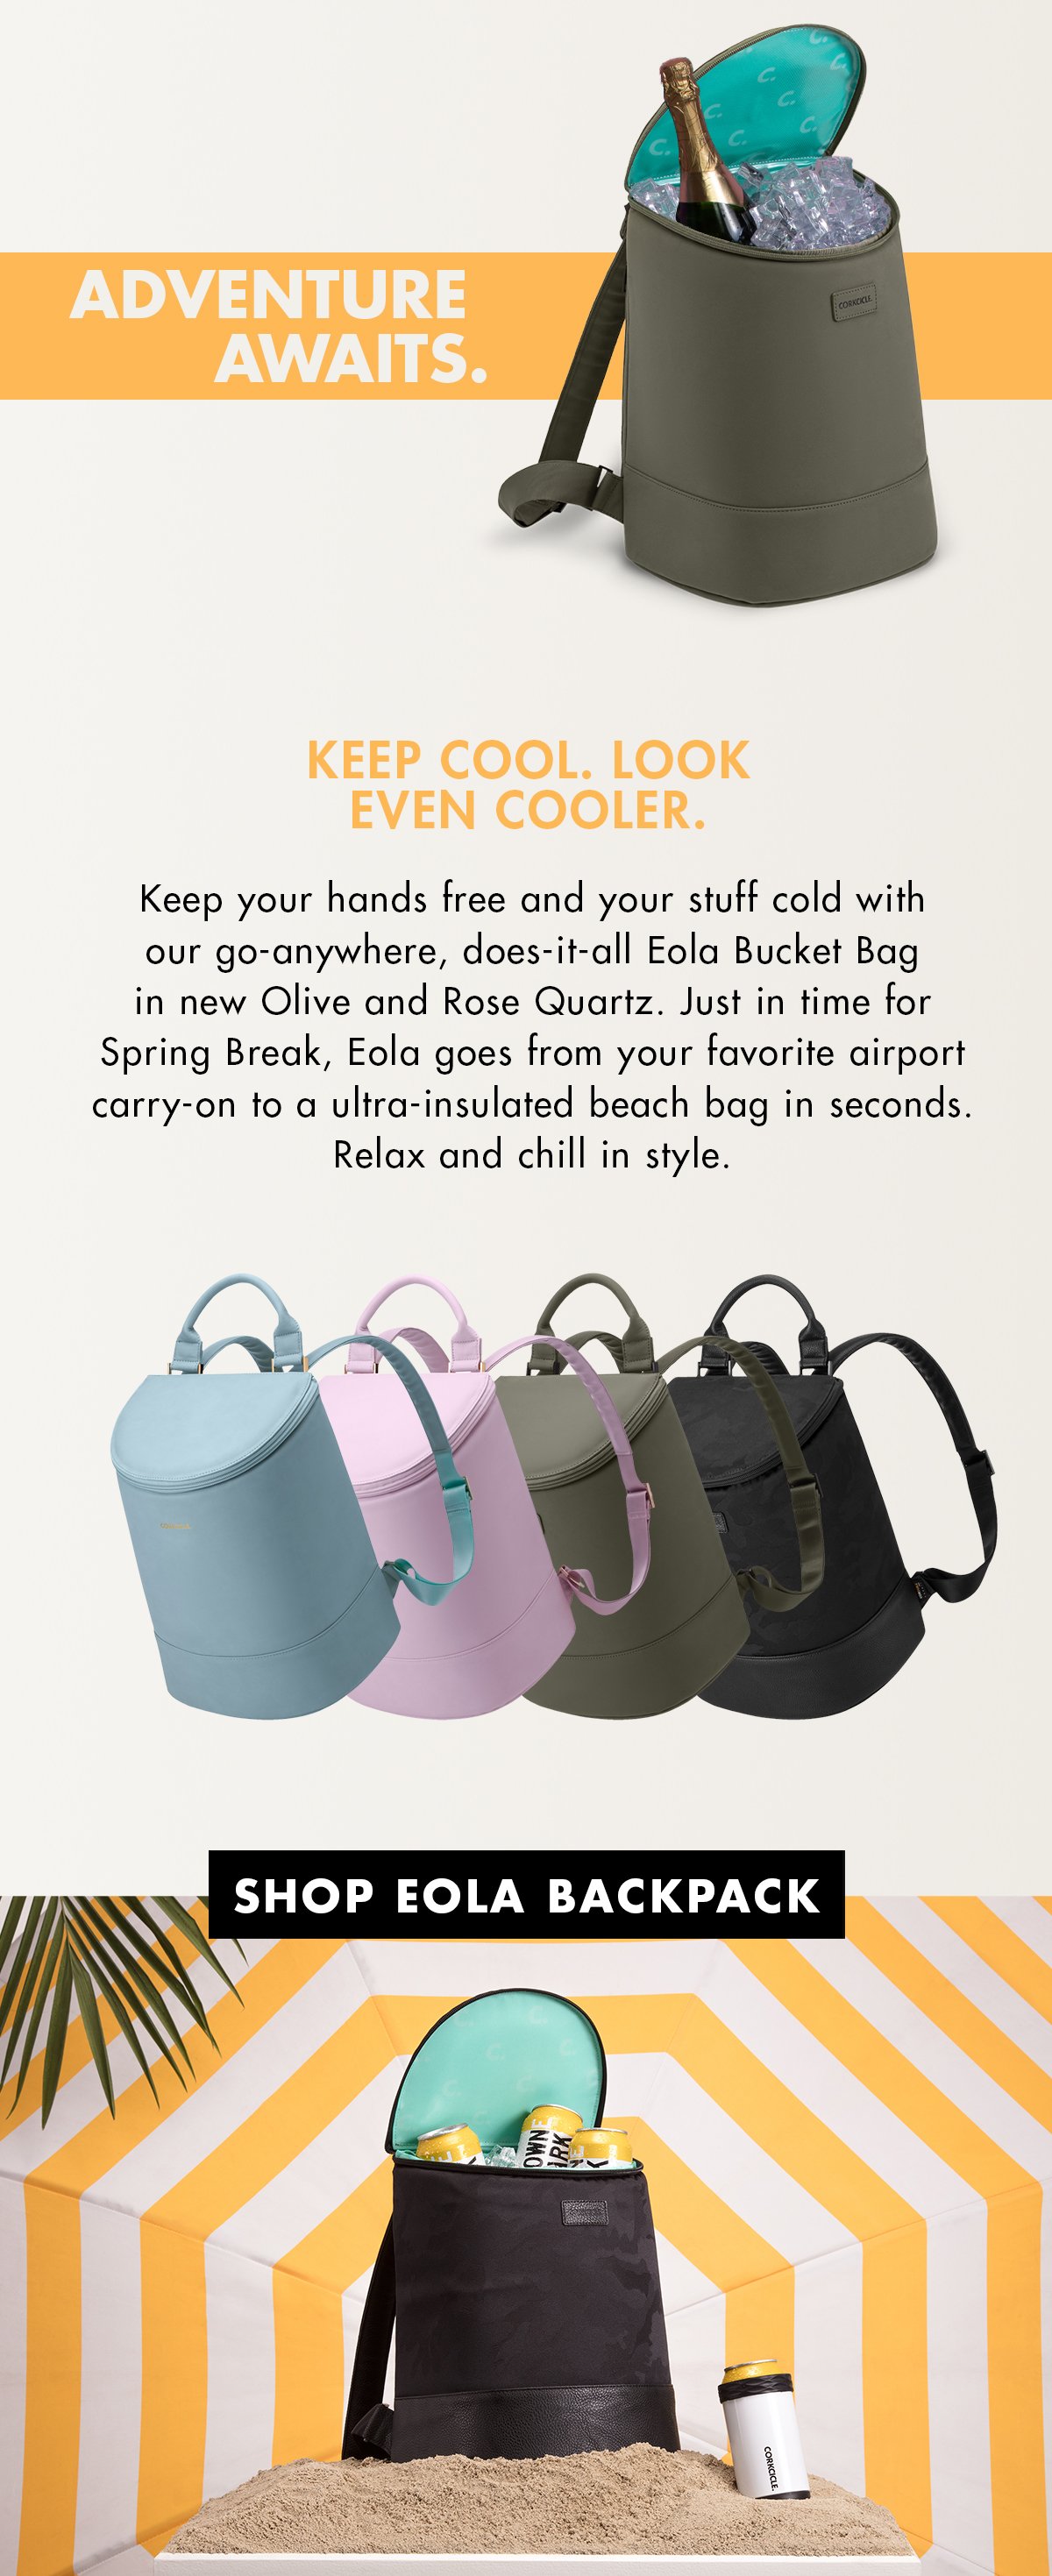 Corkcicle Olive Eola Bucket Bag Cooler